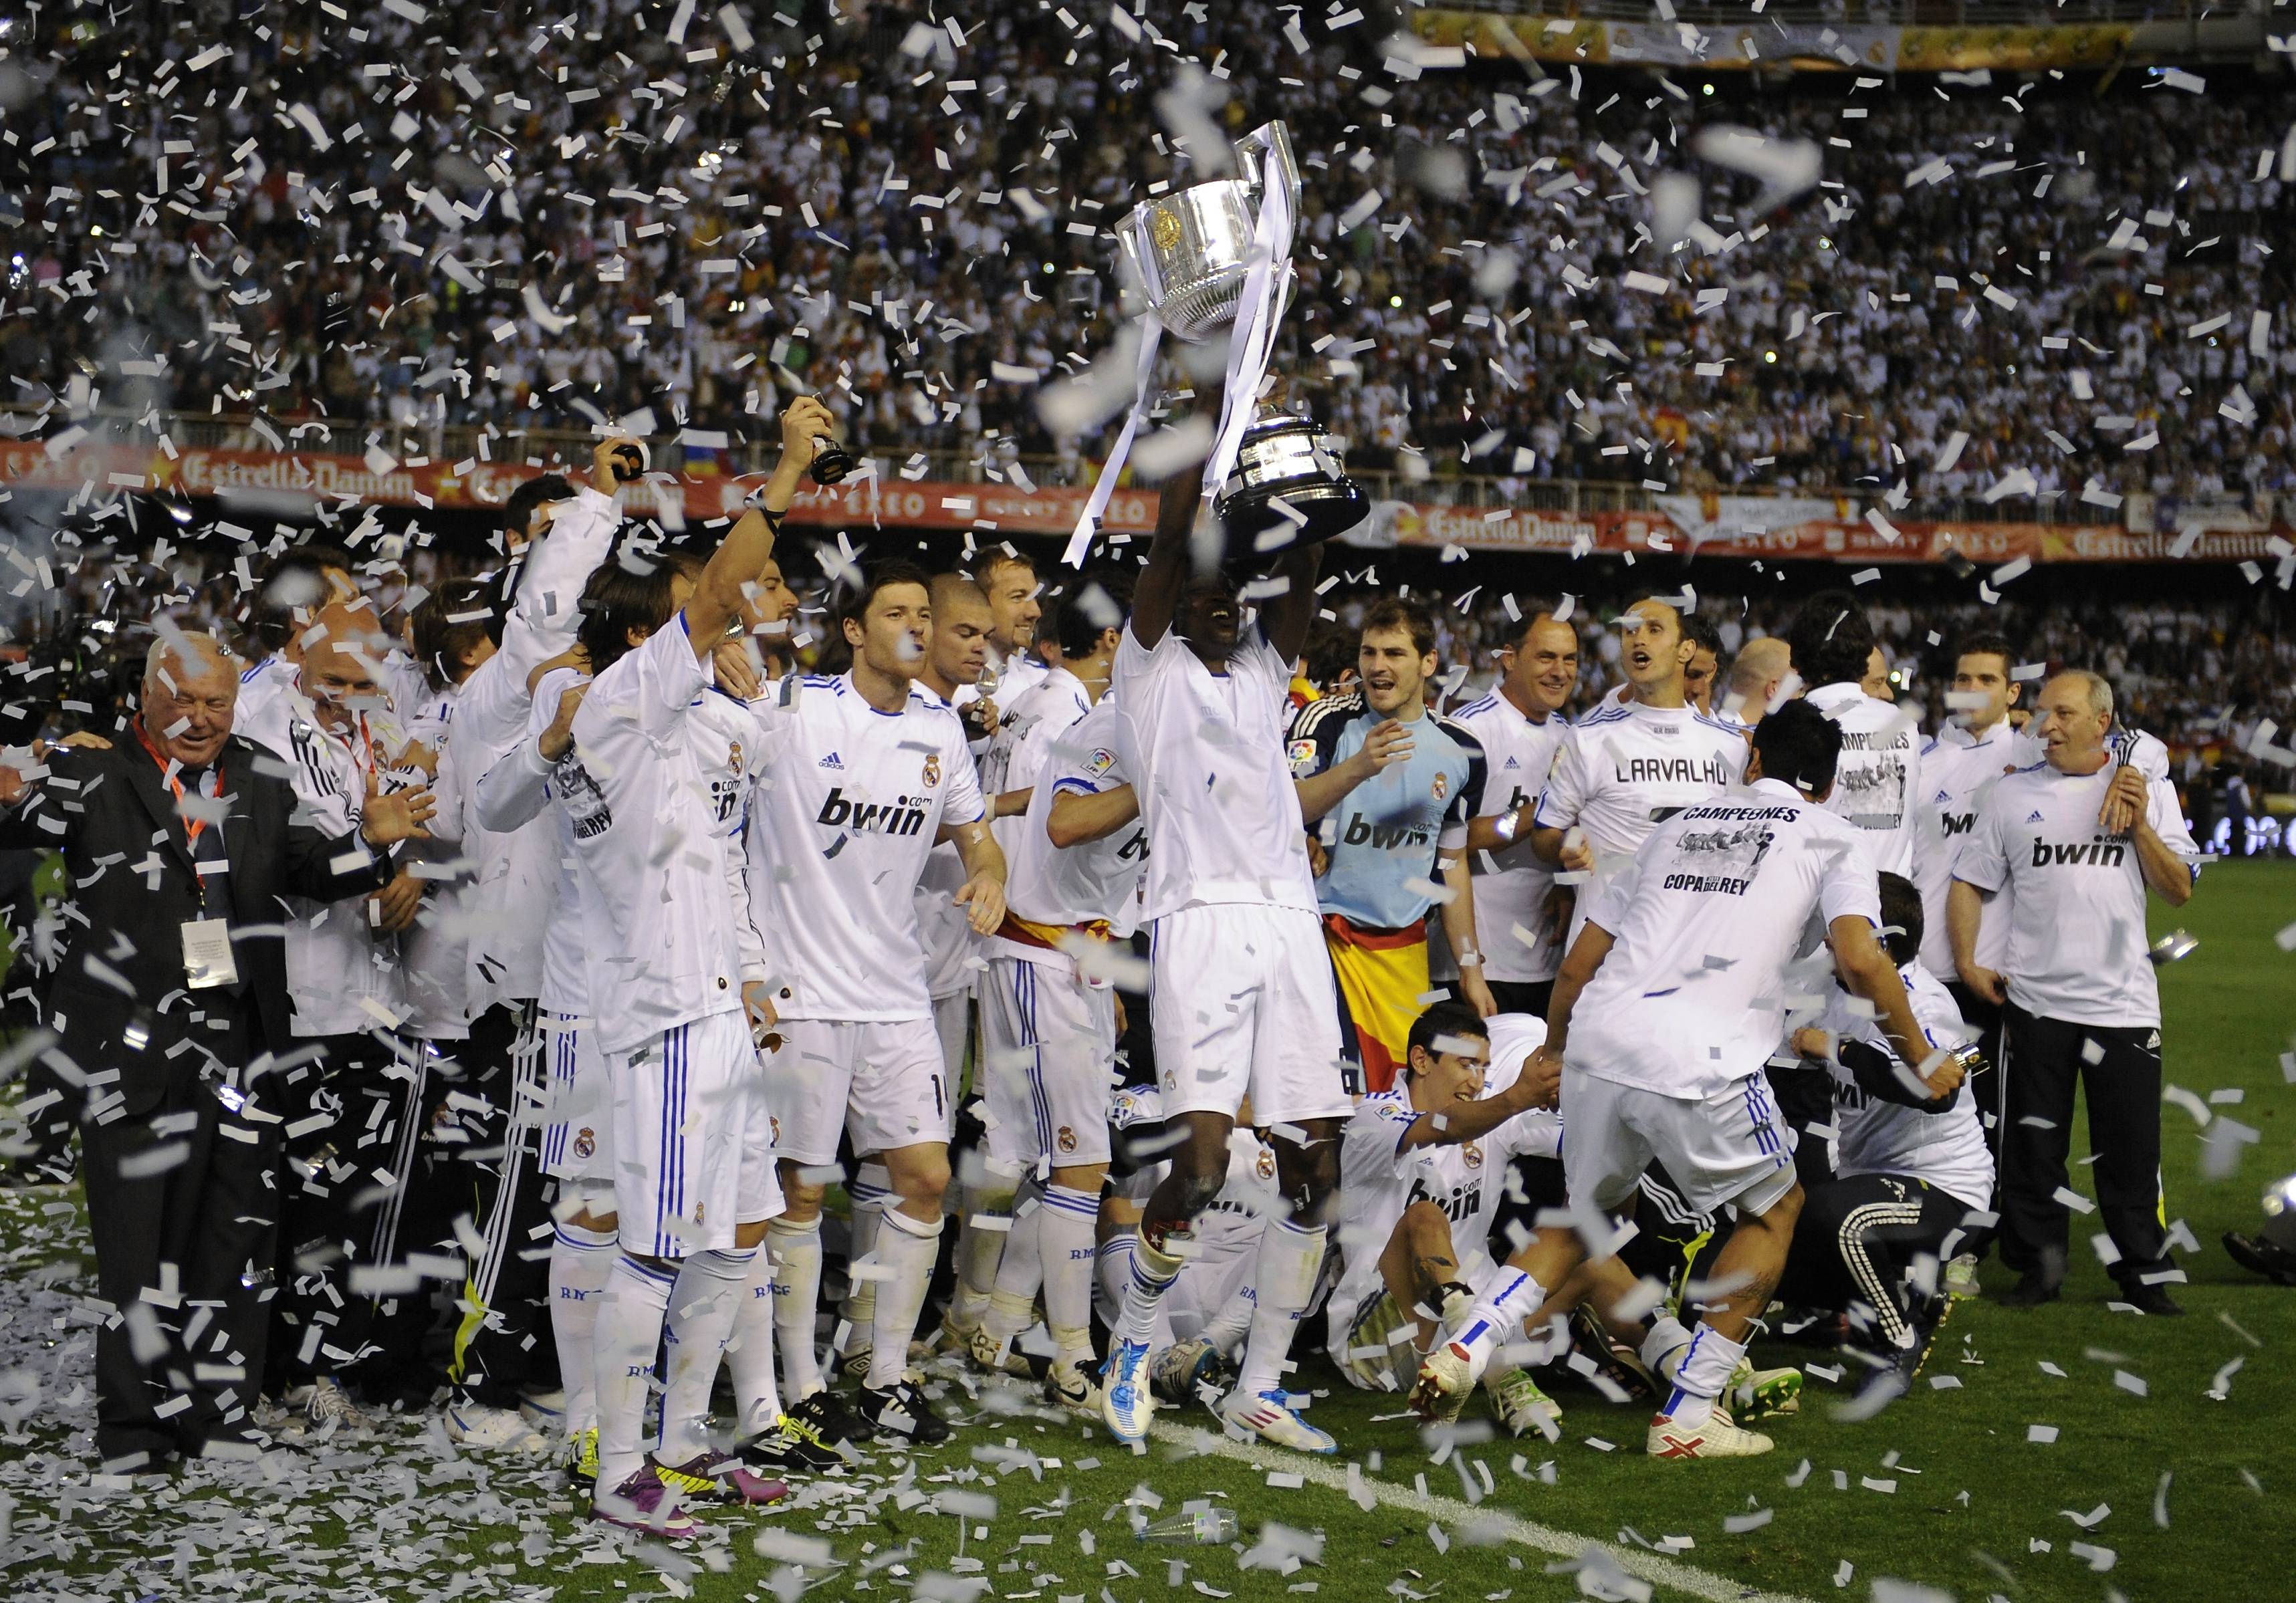 Hình nền Real Madrid HD đẹp nhất thế giới - Vùng đất tâm linh Hà Nội